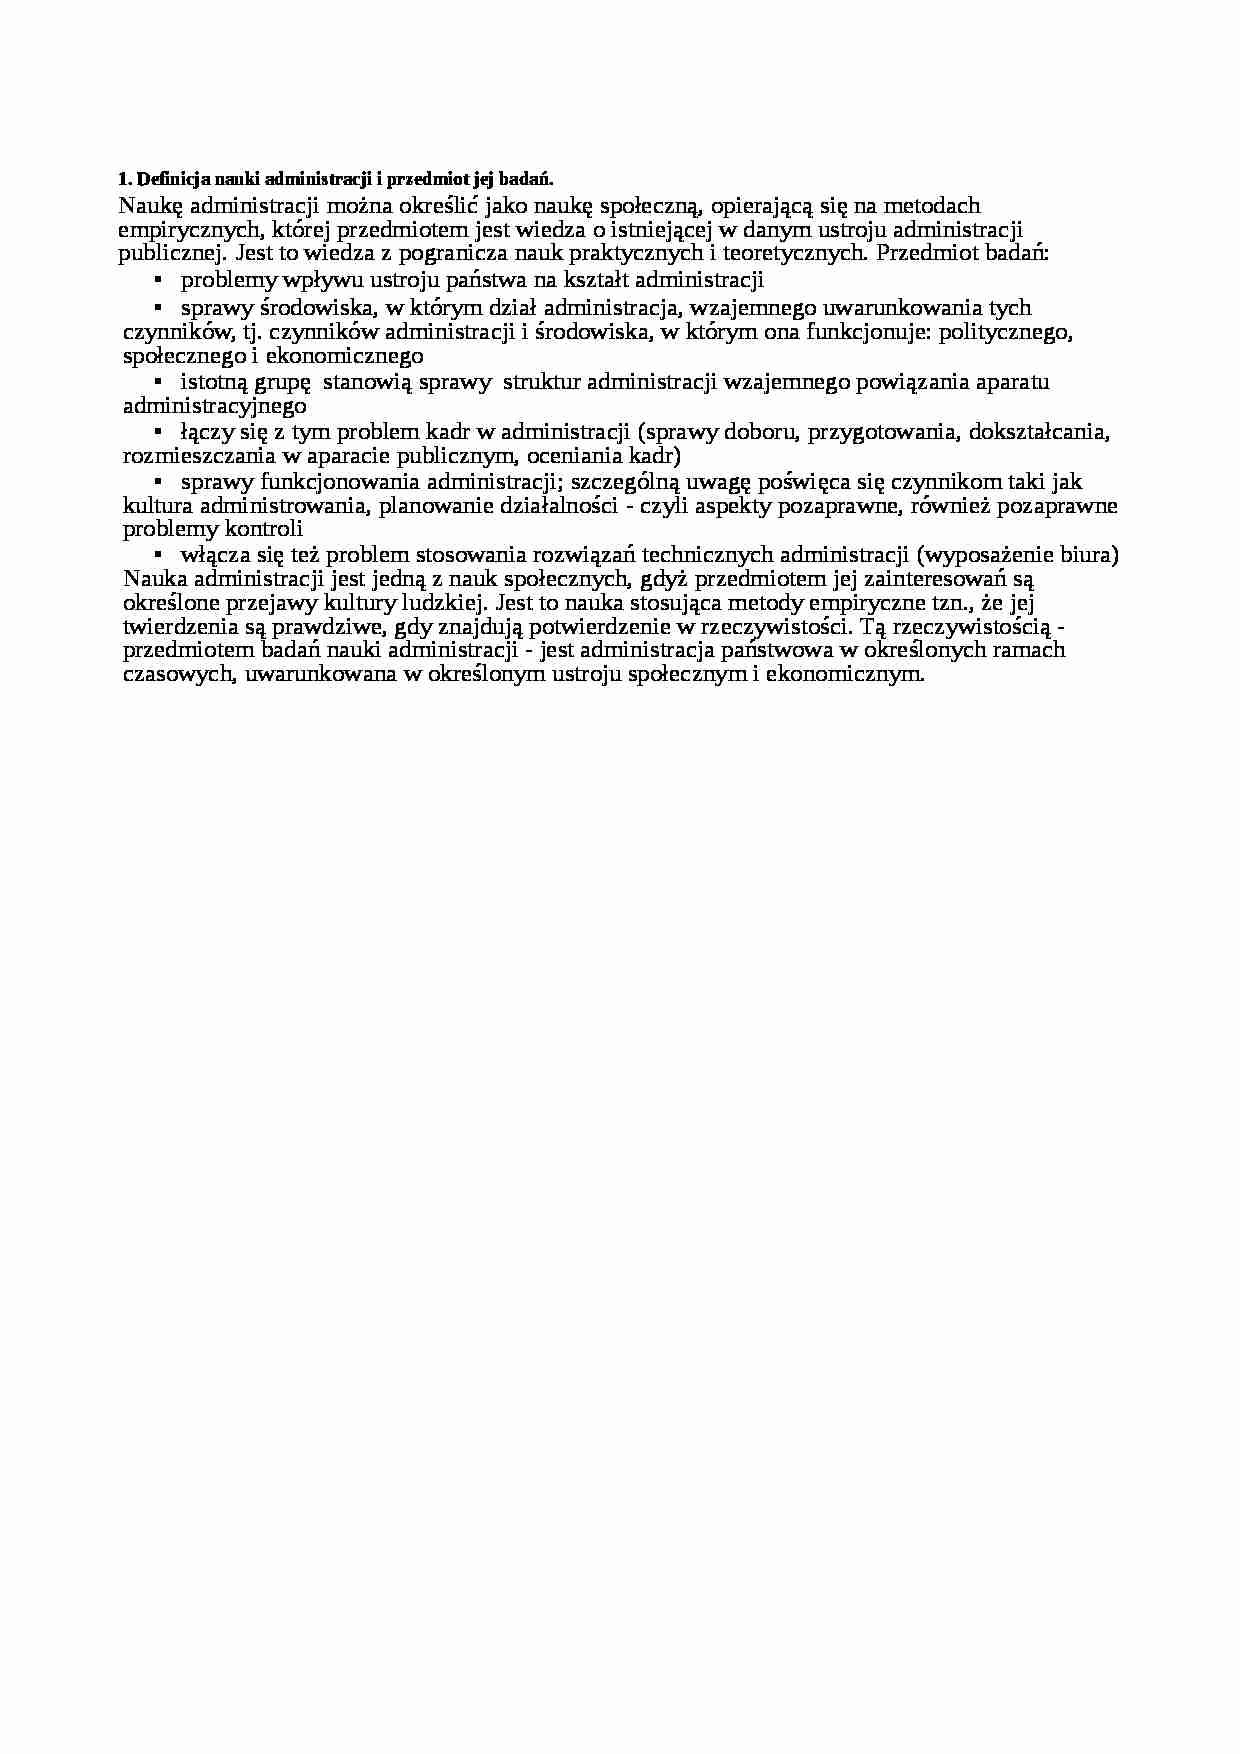 Definicja nauki administracji i przedmiot jej badań - wykład - strona 1